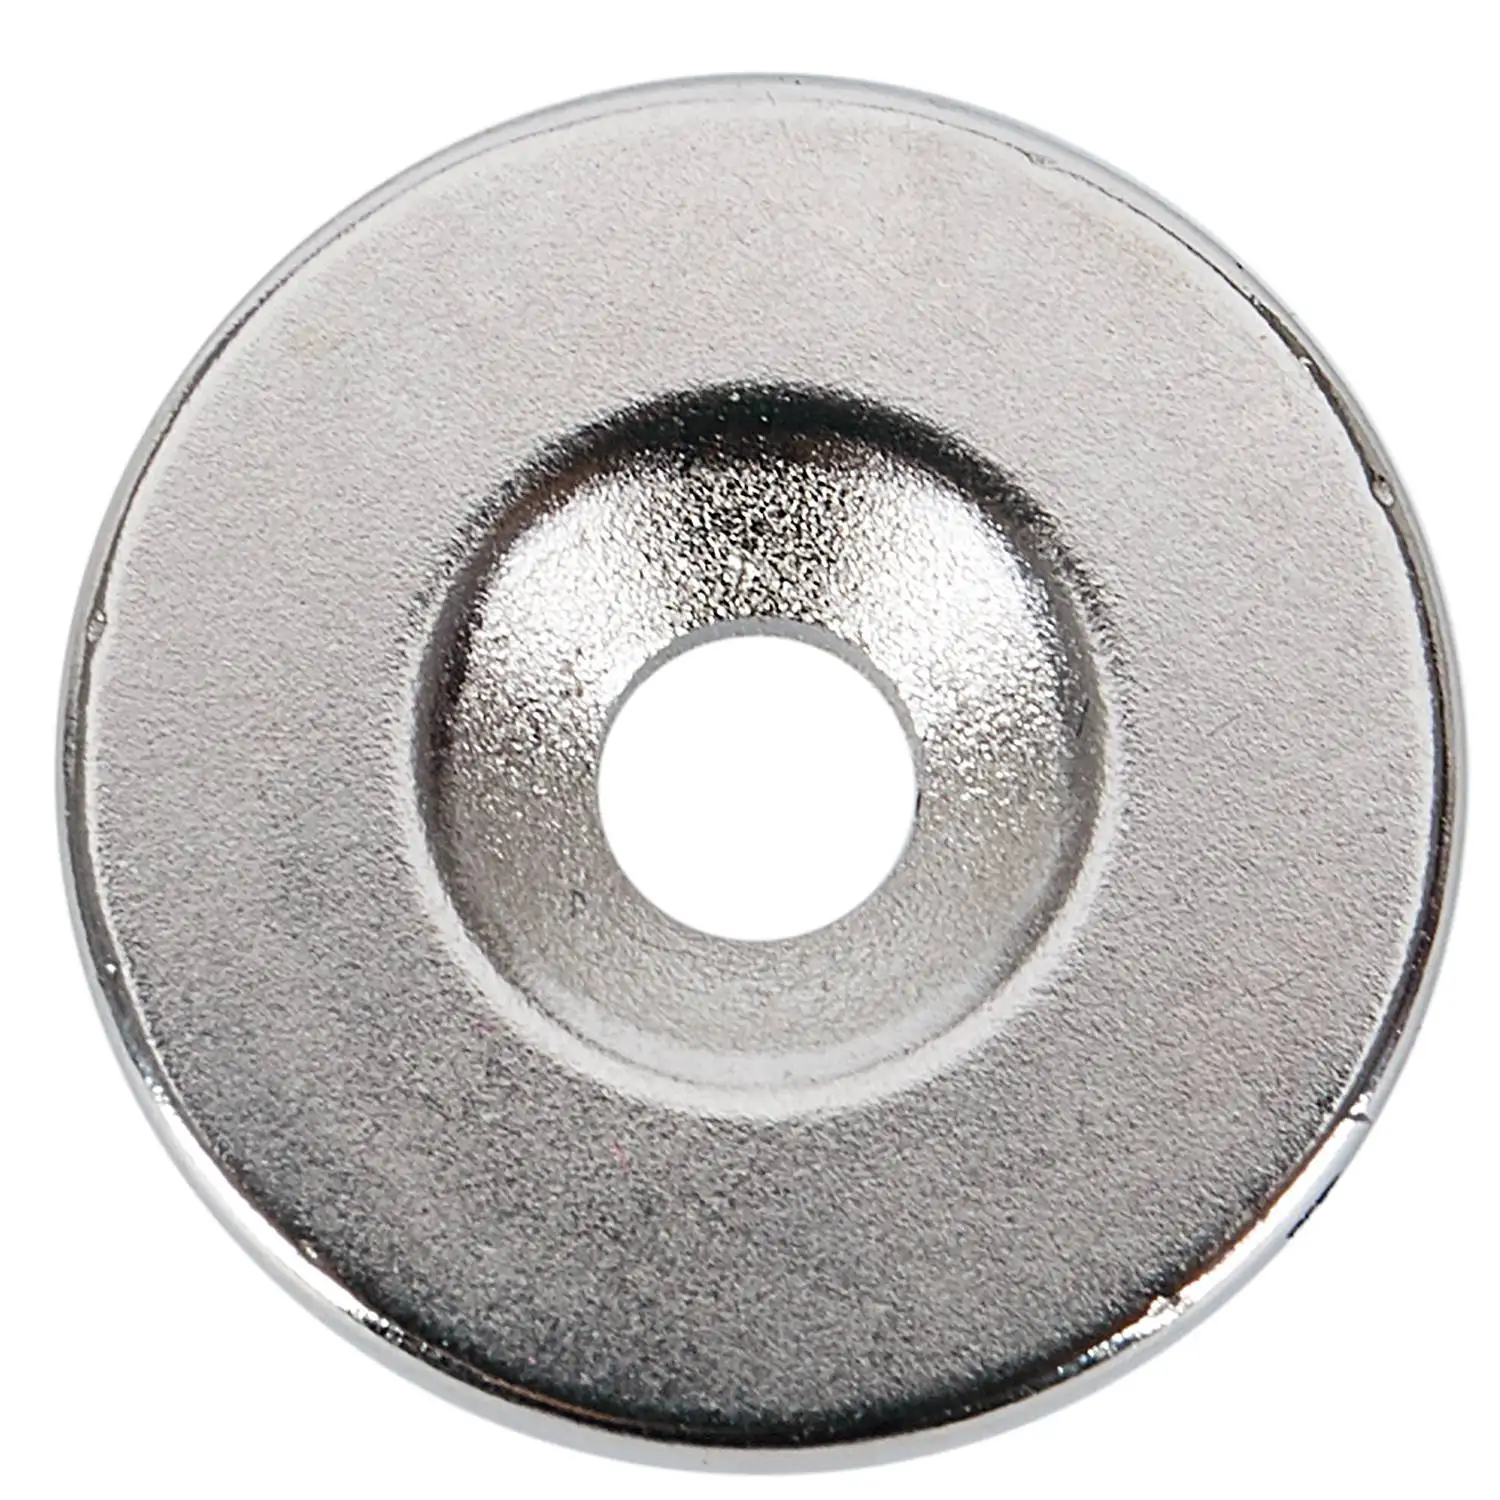 5 шт. N52 неодимовое магнитное кольцо 20x3 мм с 4 мм отверстием маленькие круглые супер мощные сильные магнитные магниты для рукоделия Галлий металл